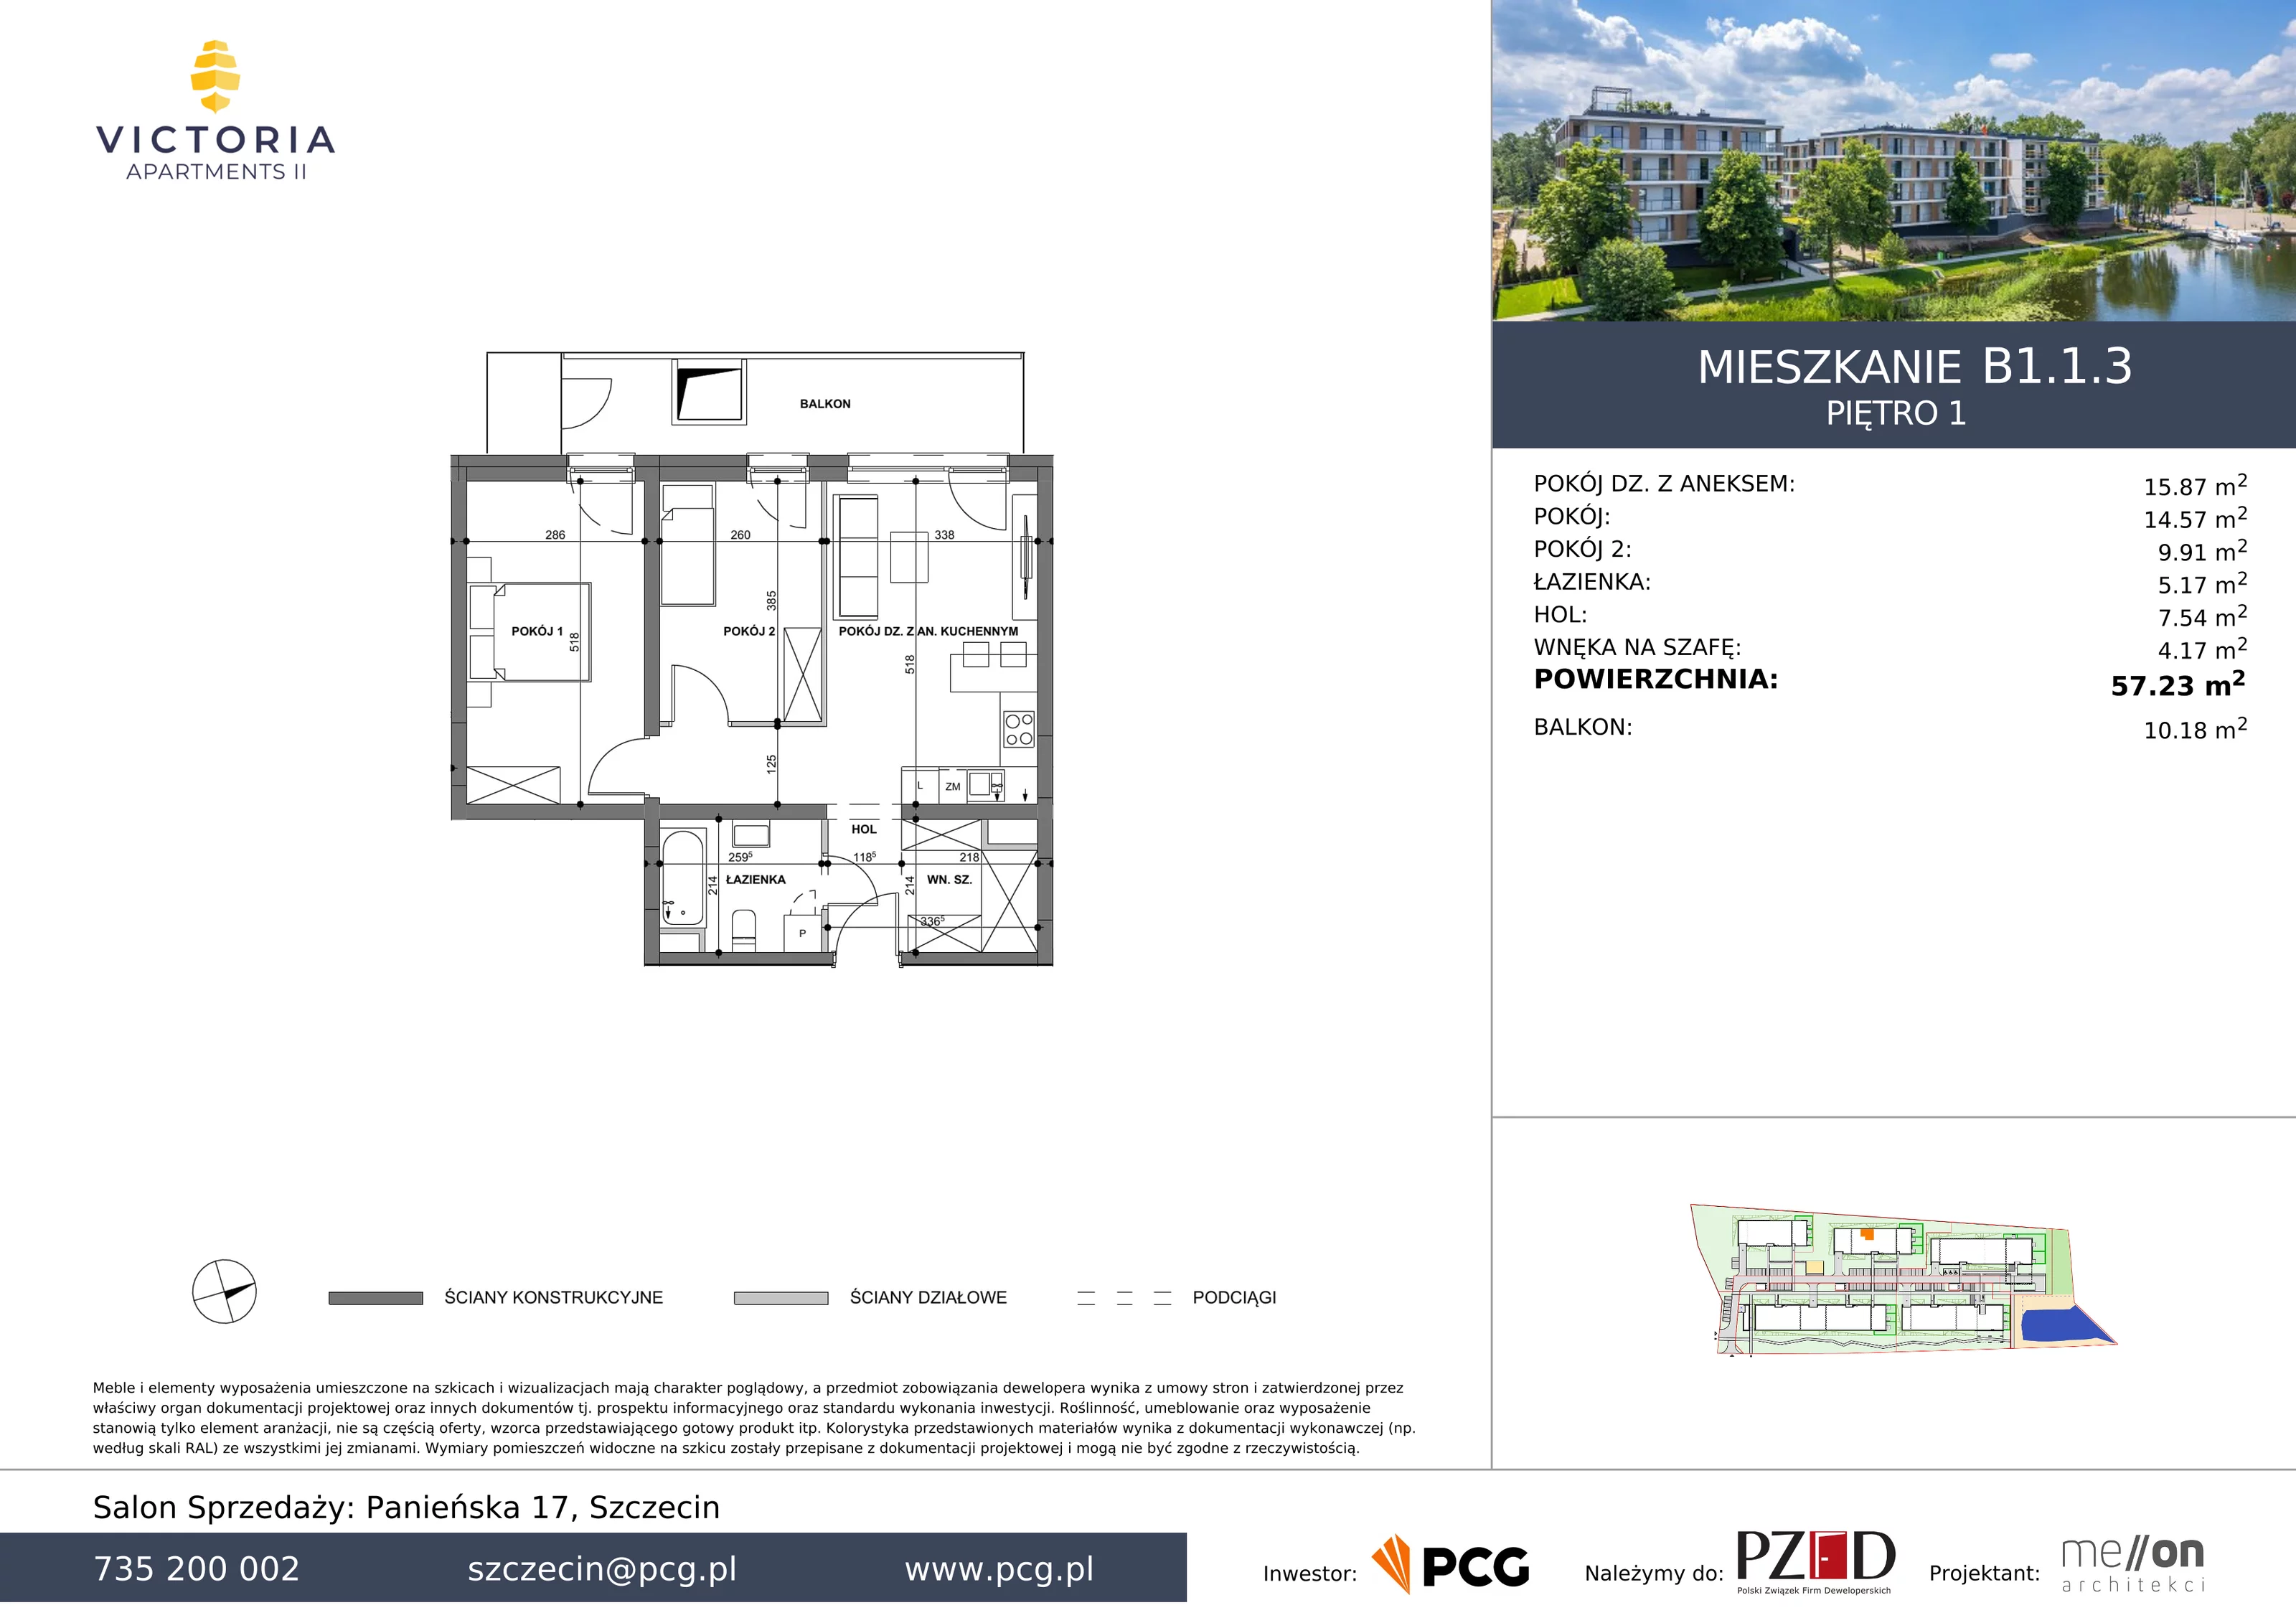 Apartament 57,23 m², piętro 1, oferta nr B1.1.3, Victoria Apartments II, Szczecin, Prawobrzeże, Dąbie, ul. Przestrzenna